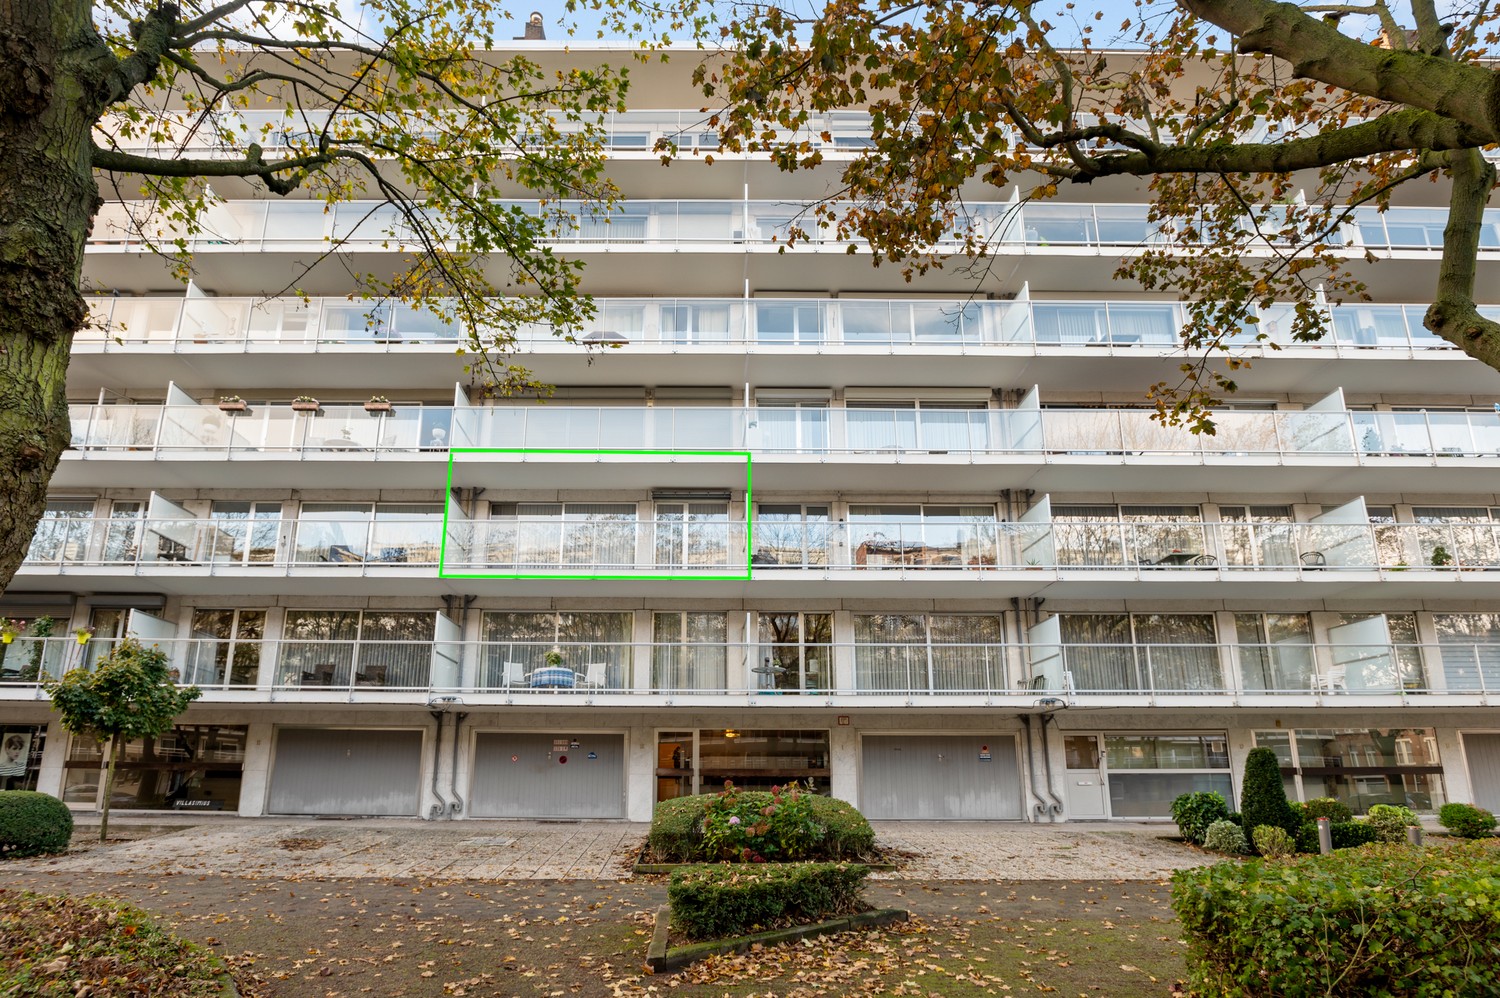 Appartement met drie slaapkamers, prachtig terras op gegeerde locatie in Deurne! afbeelding 1